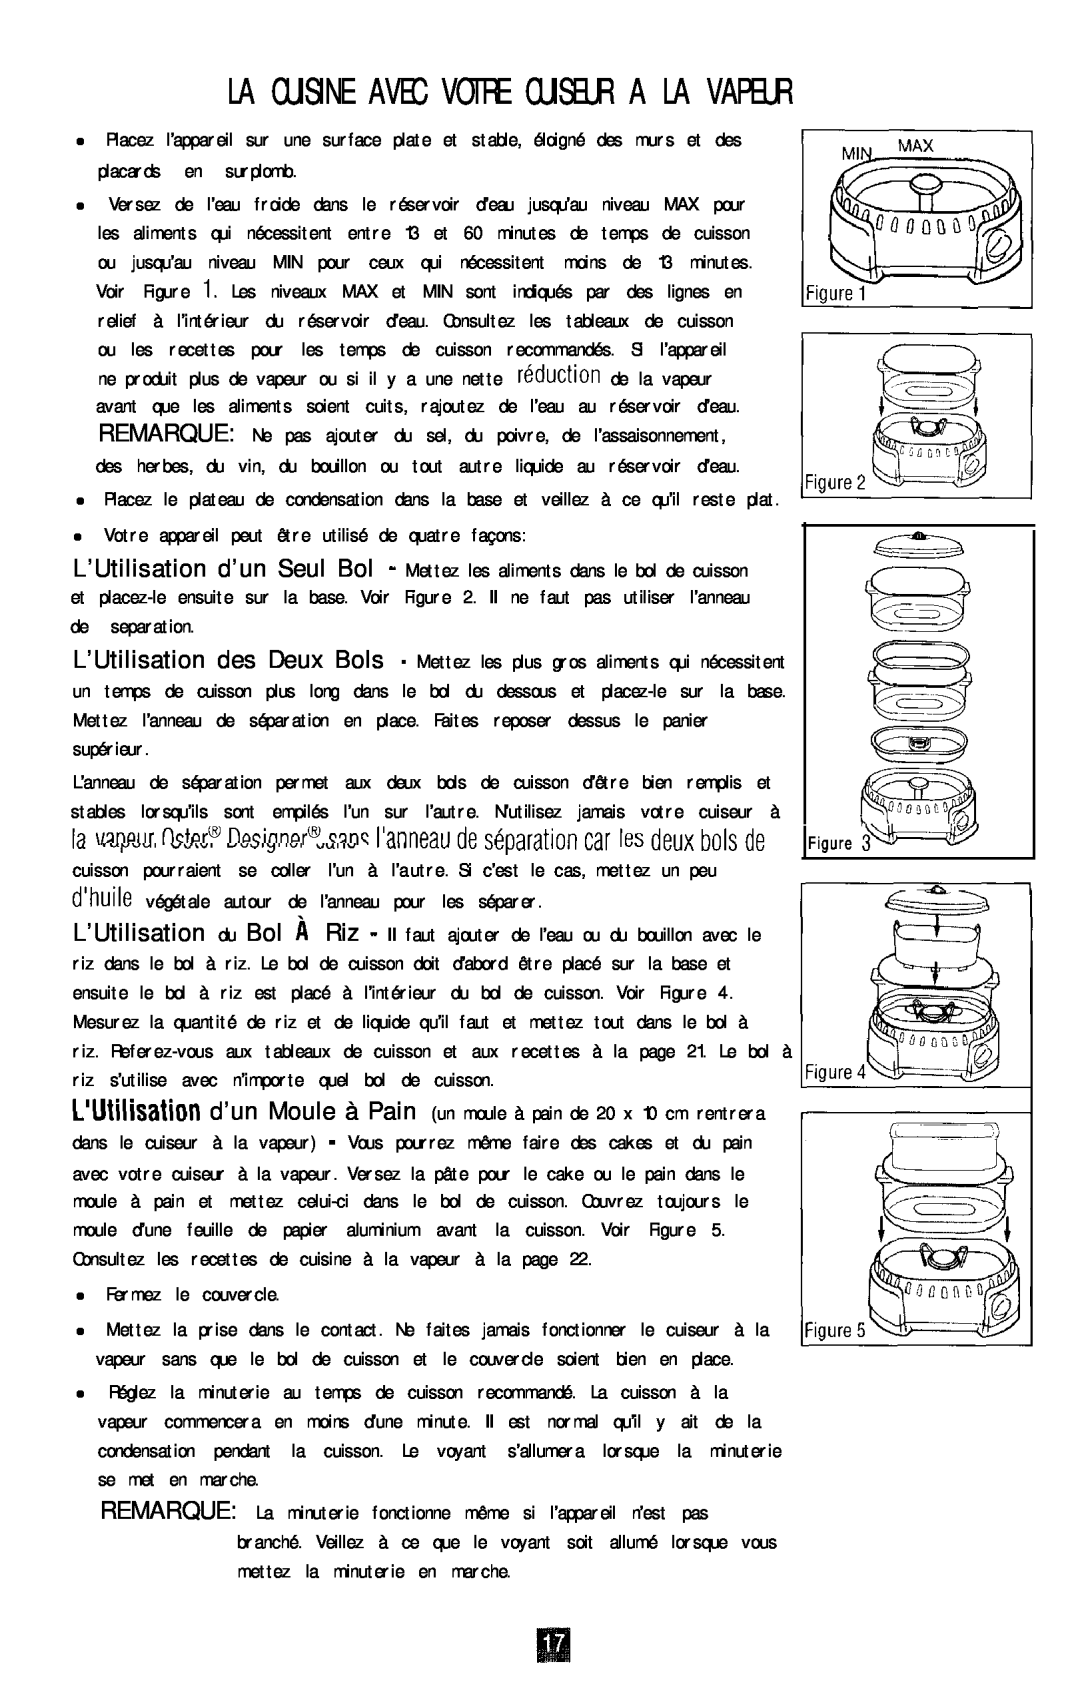 Oster 4711 manual La Cuisine Avec Votre Cuiseur A La Vapeur, Consultez les recettes de cuisine à la vapeur à la page, w 